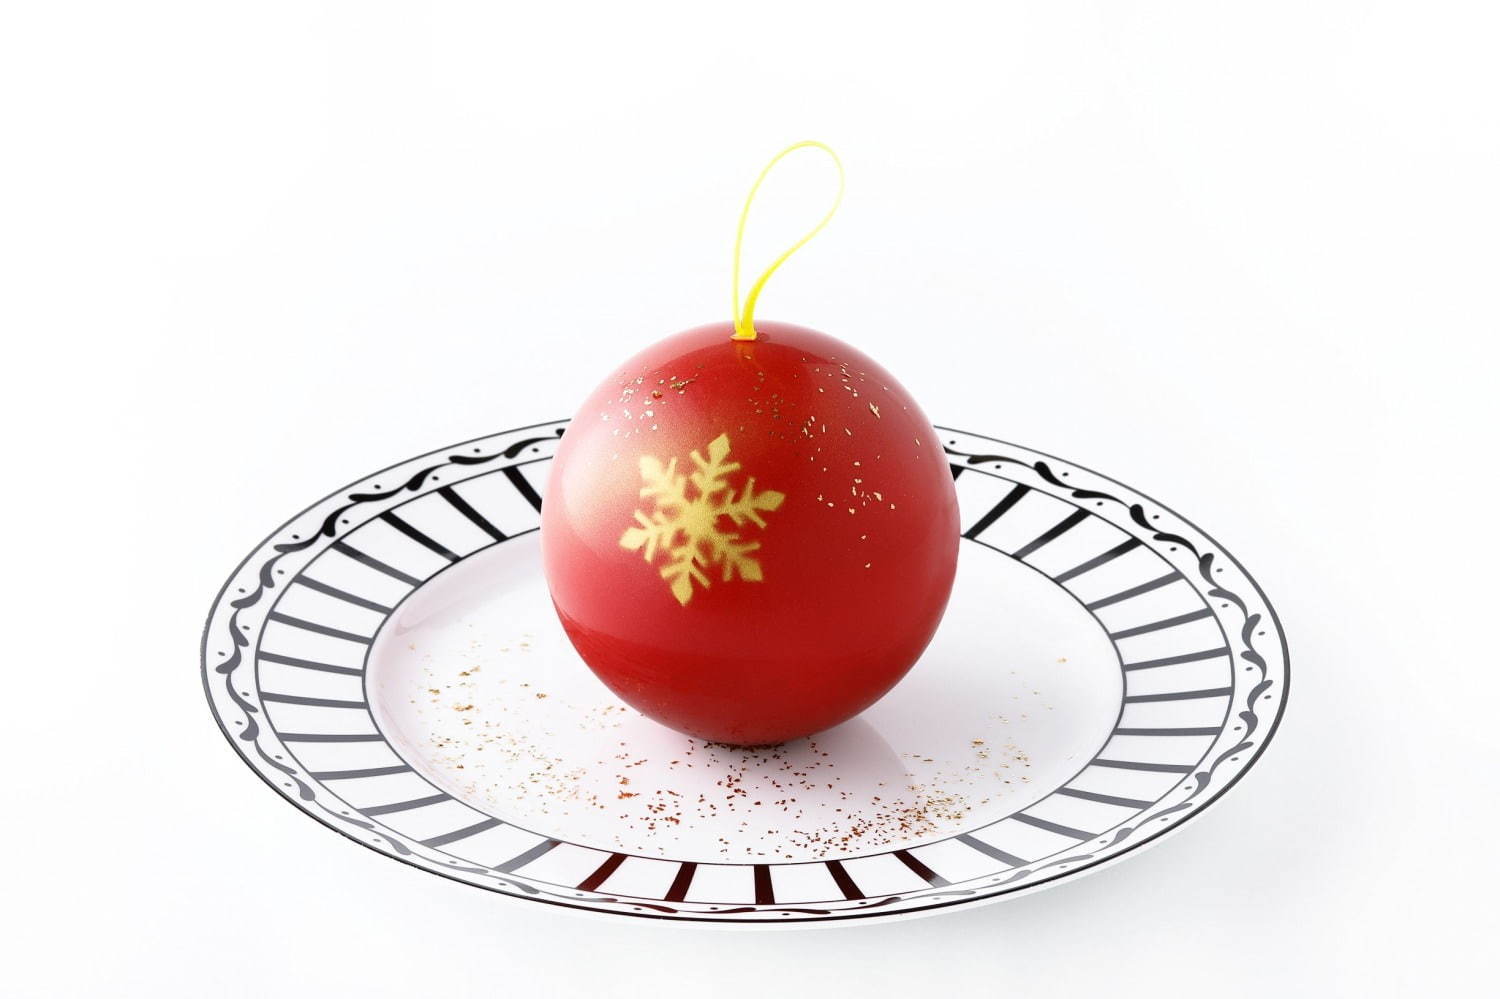 ディオールとピエール・エルメ・パリのカフェから、"オーナメント風"深紅の球体型クリスマスデザート